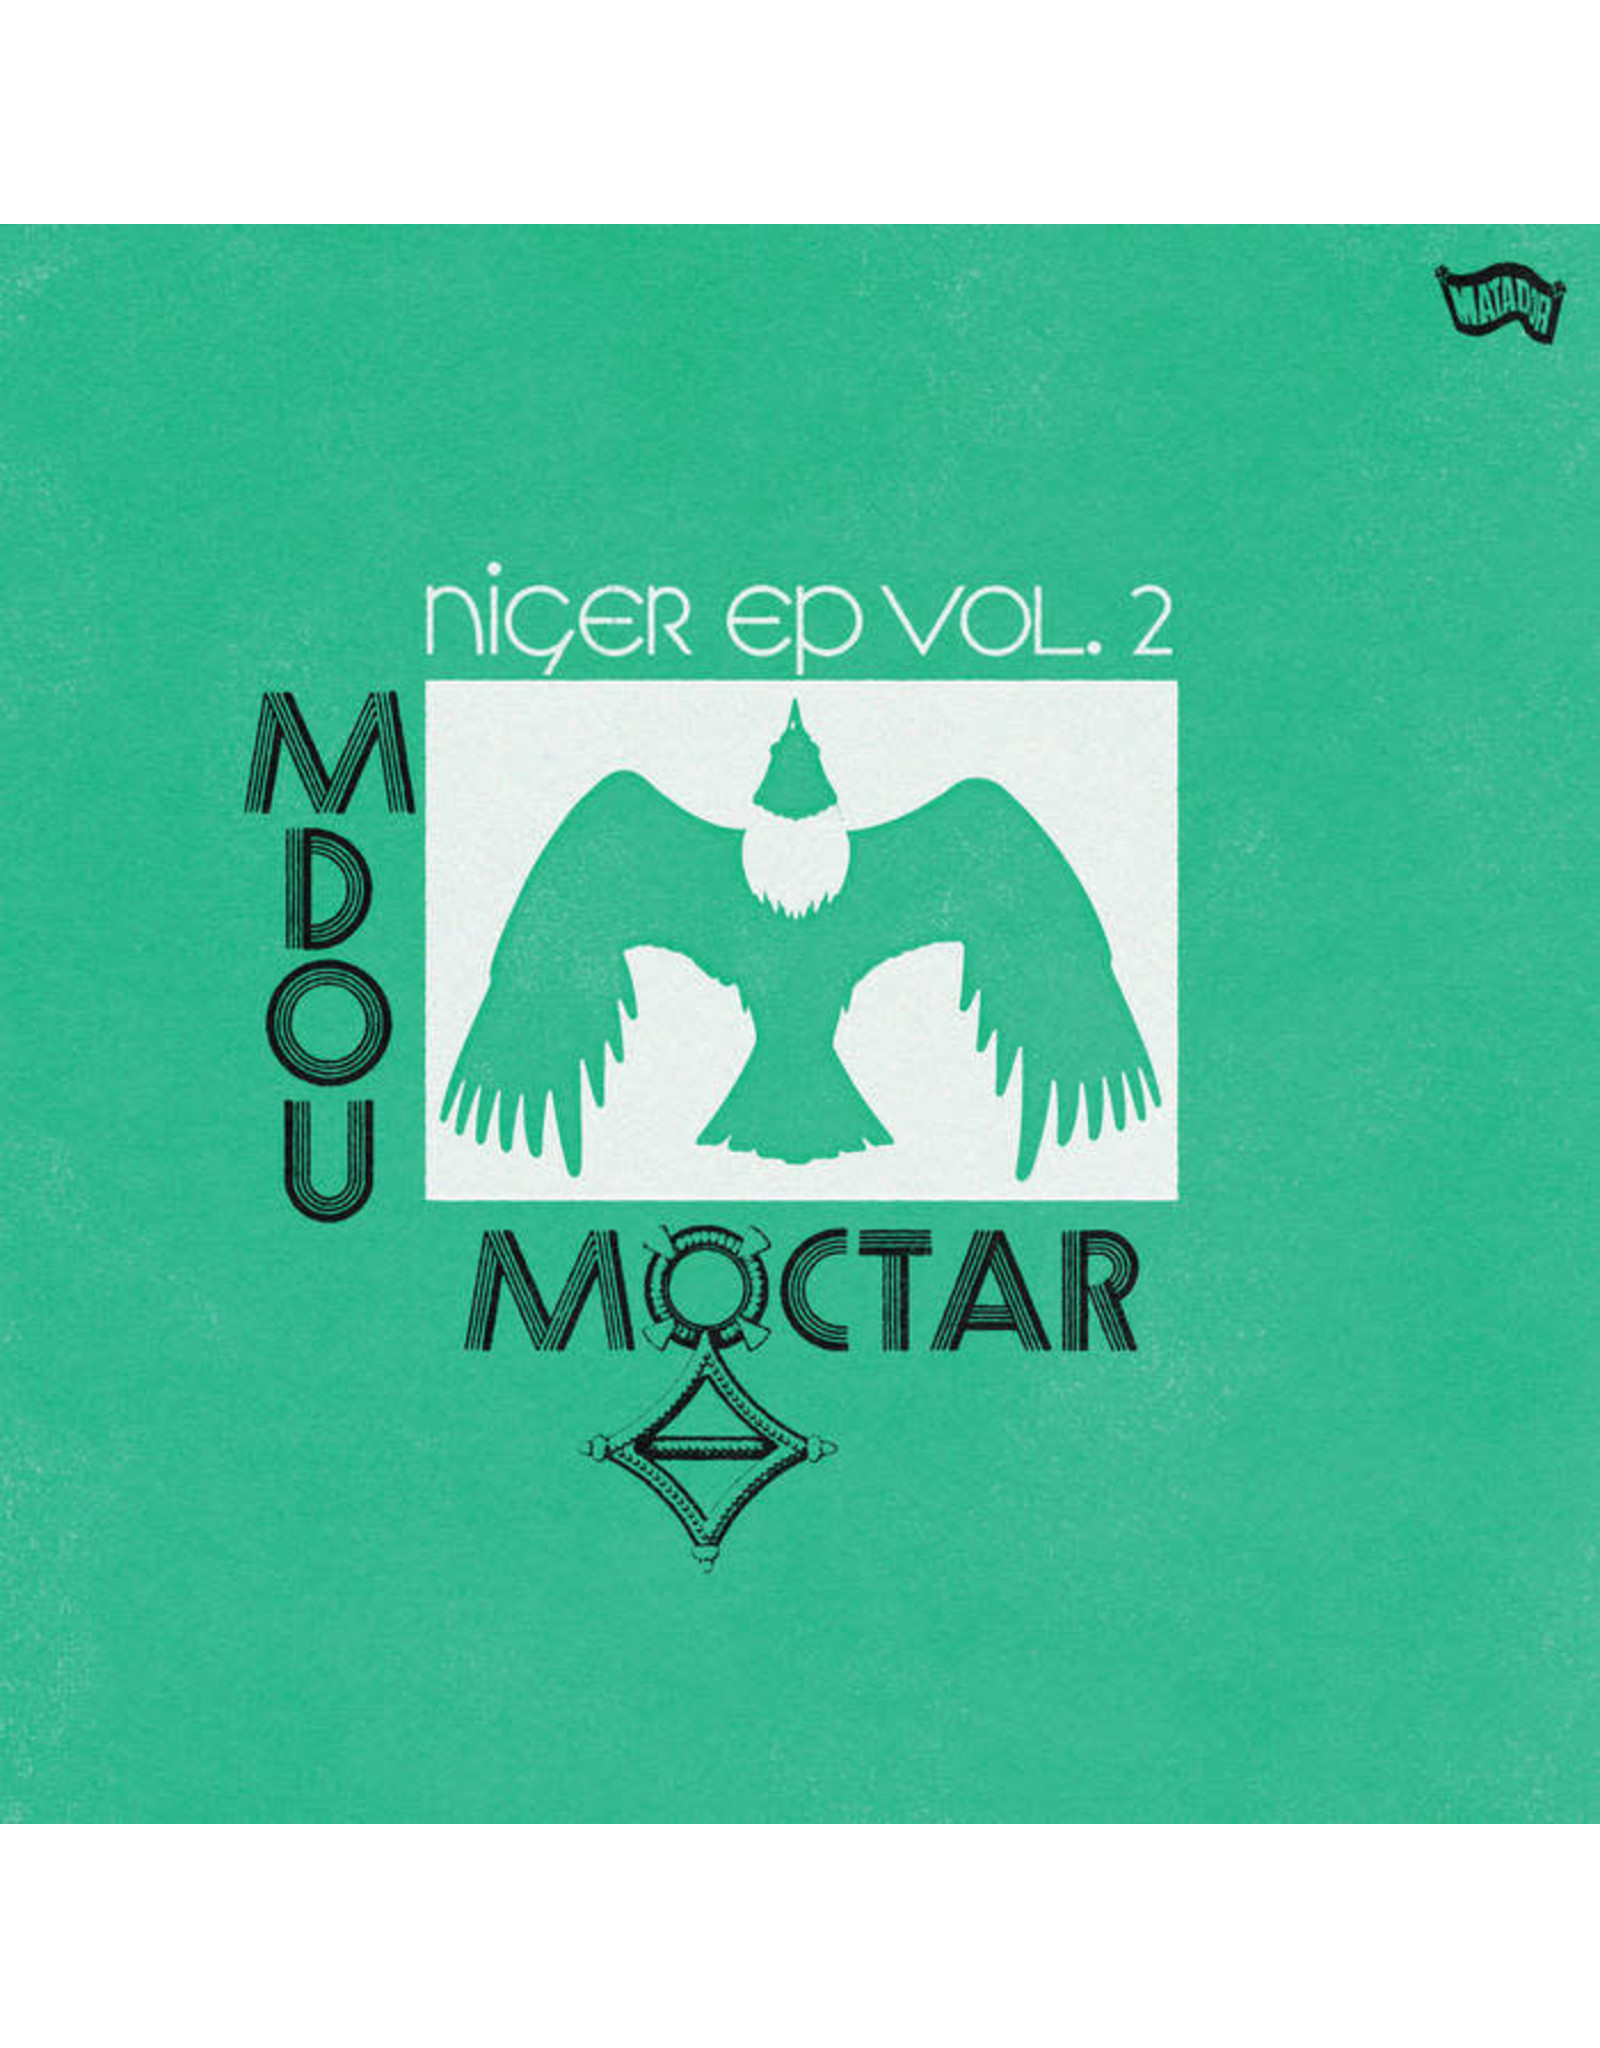 Matador Moctar, Mdou: Niger EP Vol. 2 (green) LP